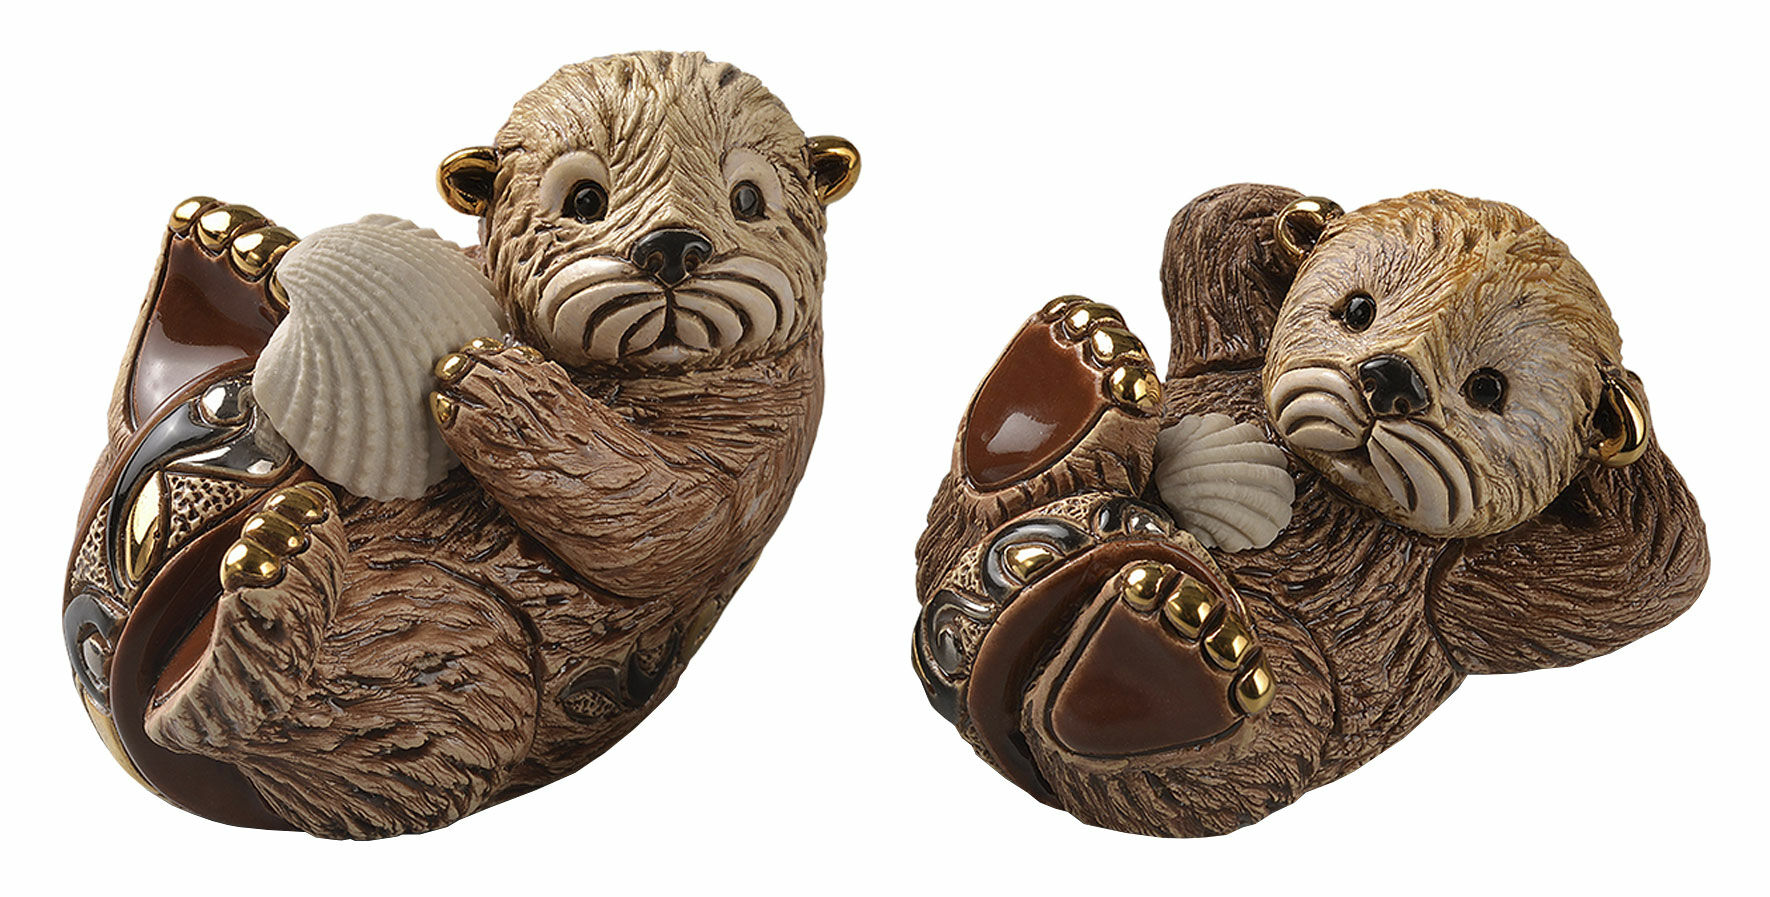 Sæt med 2 keramikfigurer "Otters"